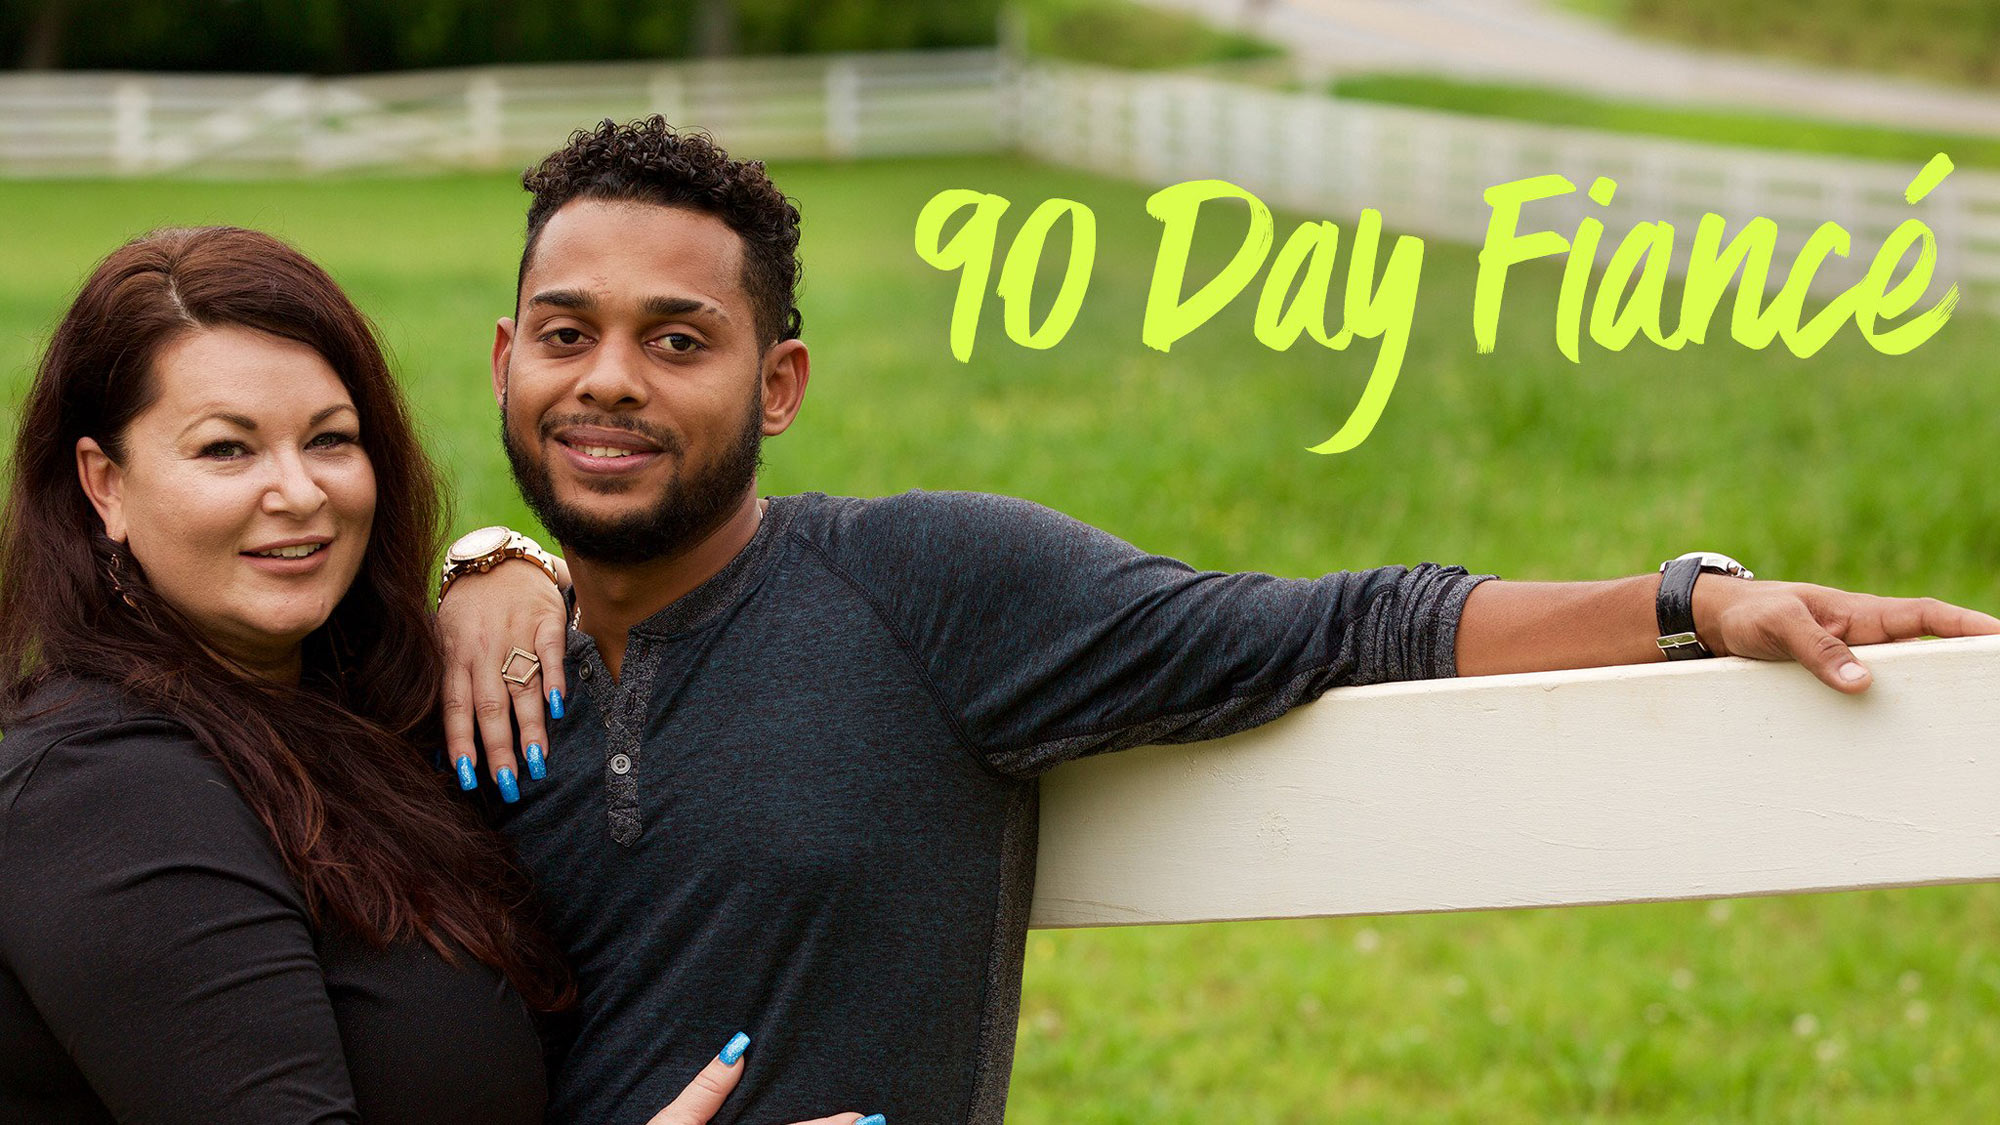 90 day fiance reddit